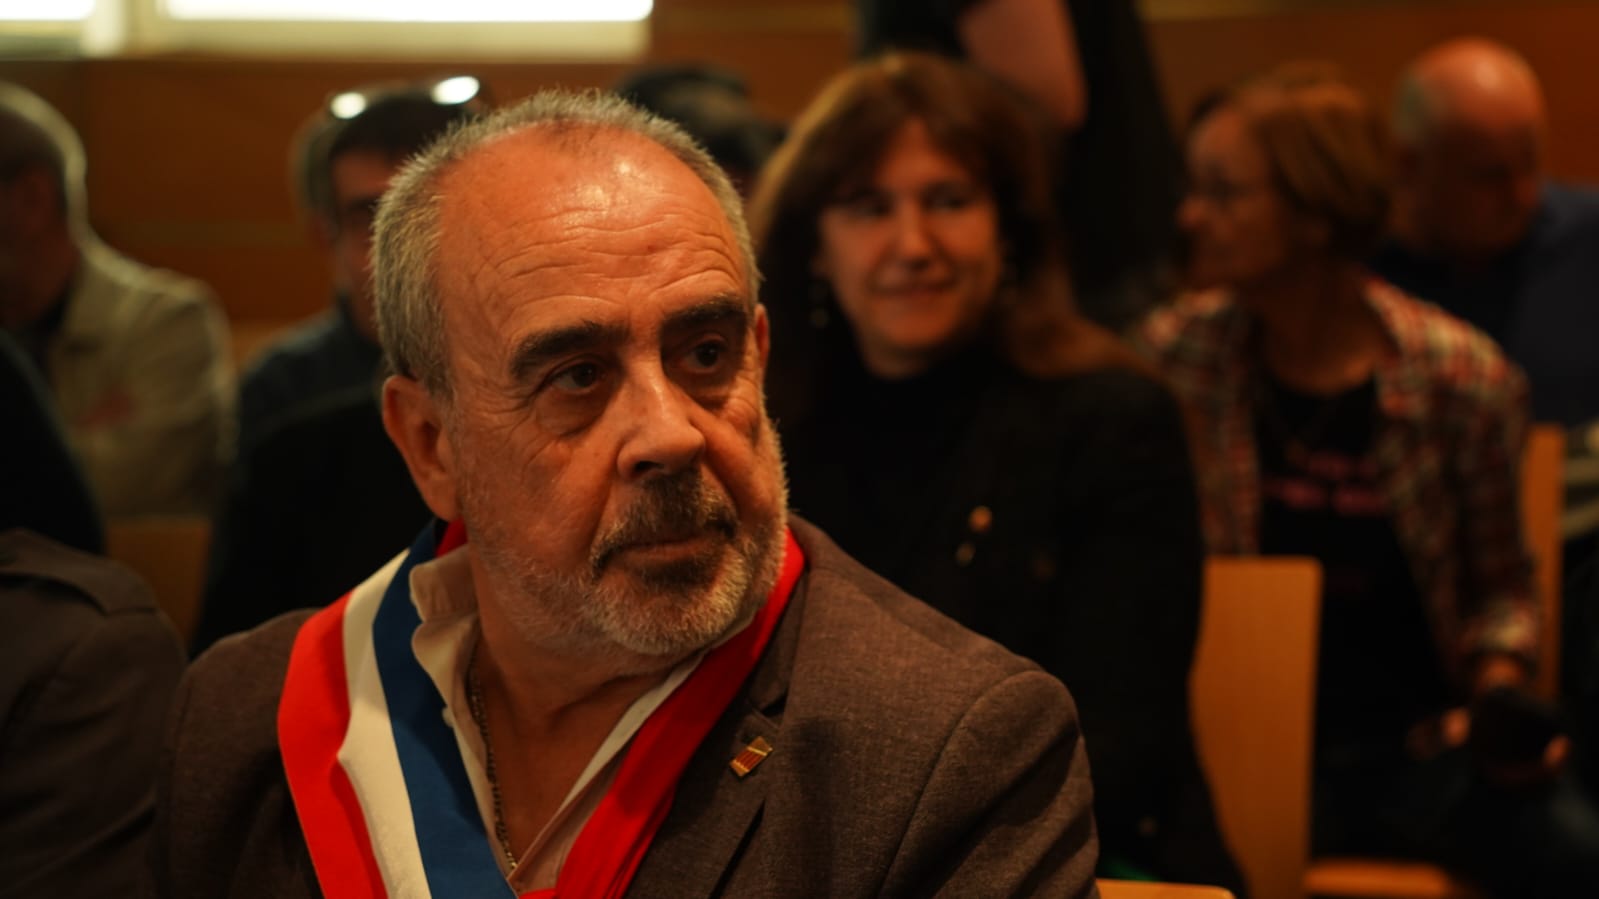 El alcalde de Elna, tras el juicio: "Si no hablamos catalán en los lugares públicos, ¿quién lo hará?"